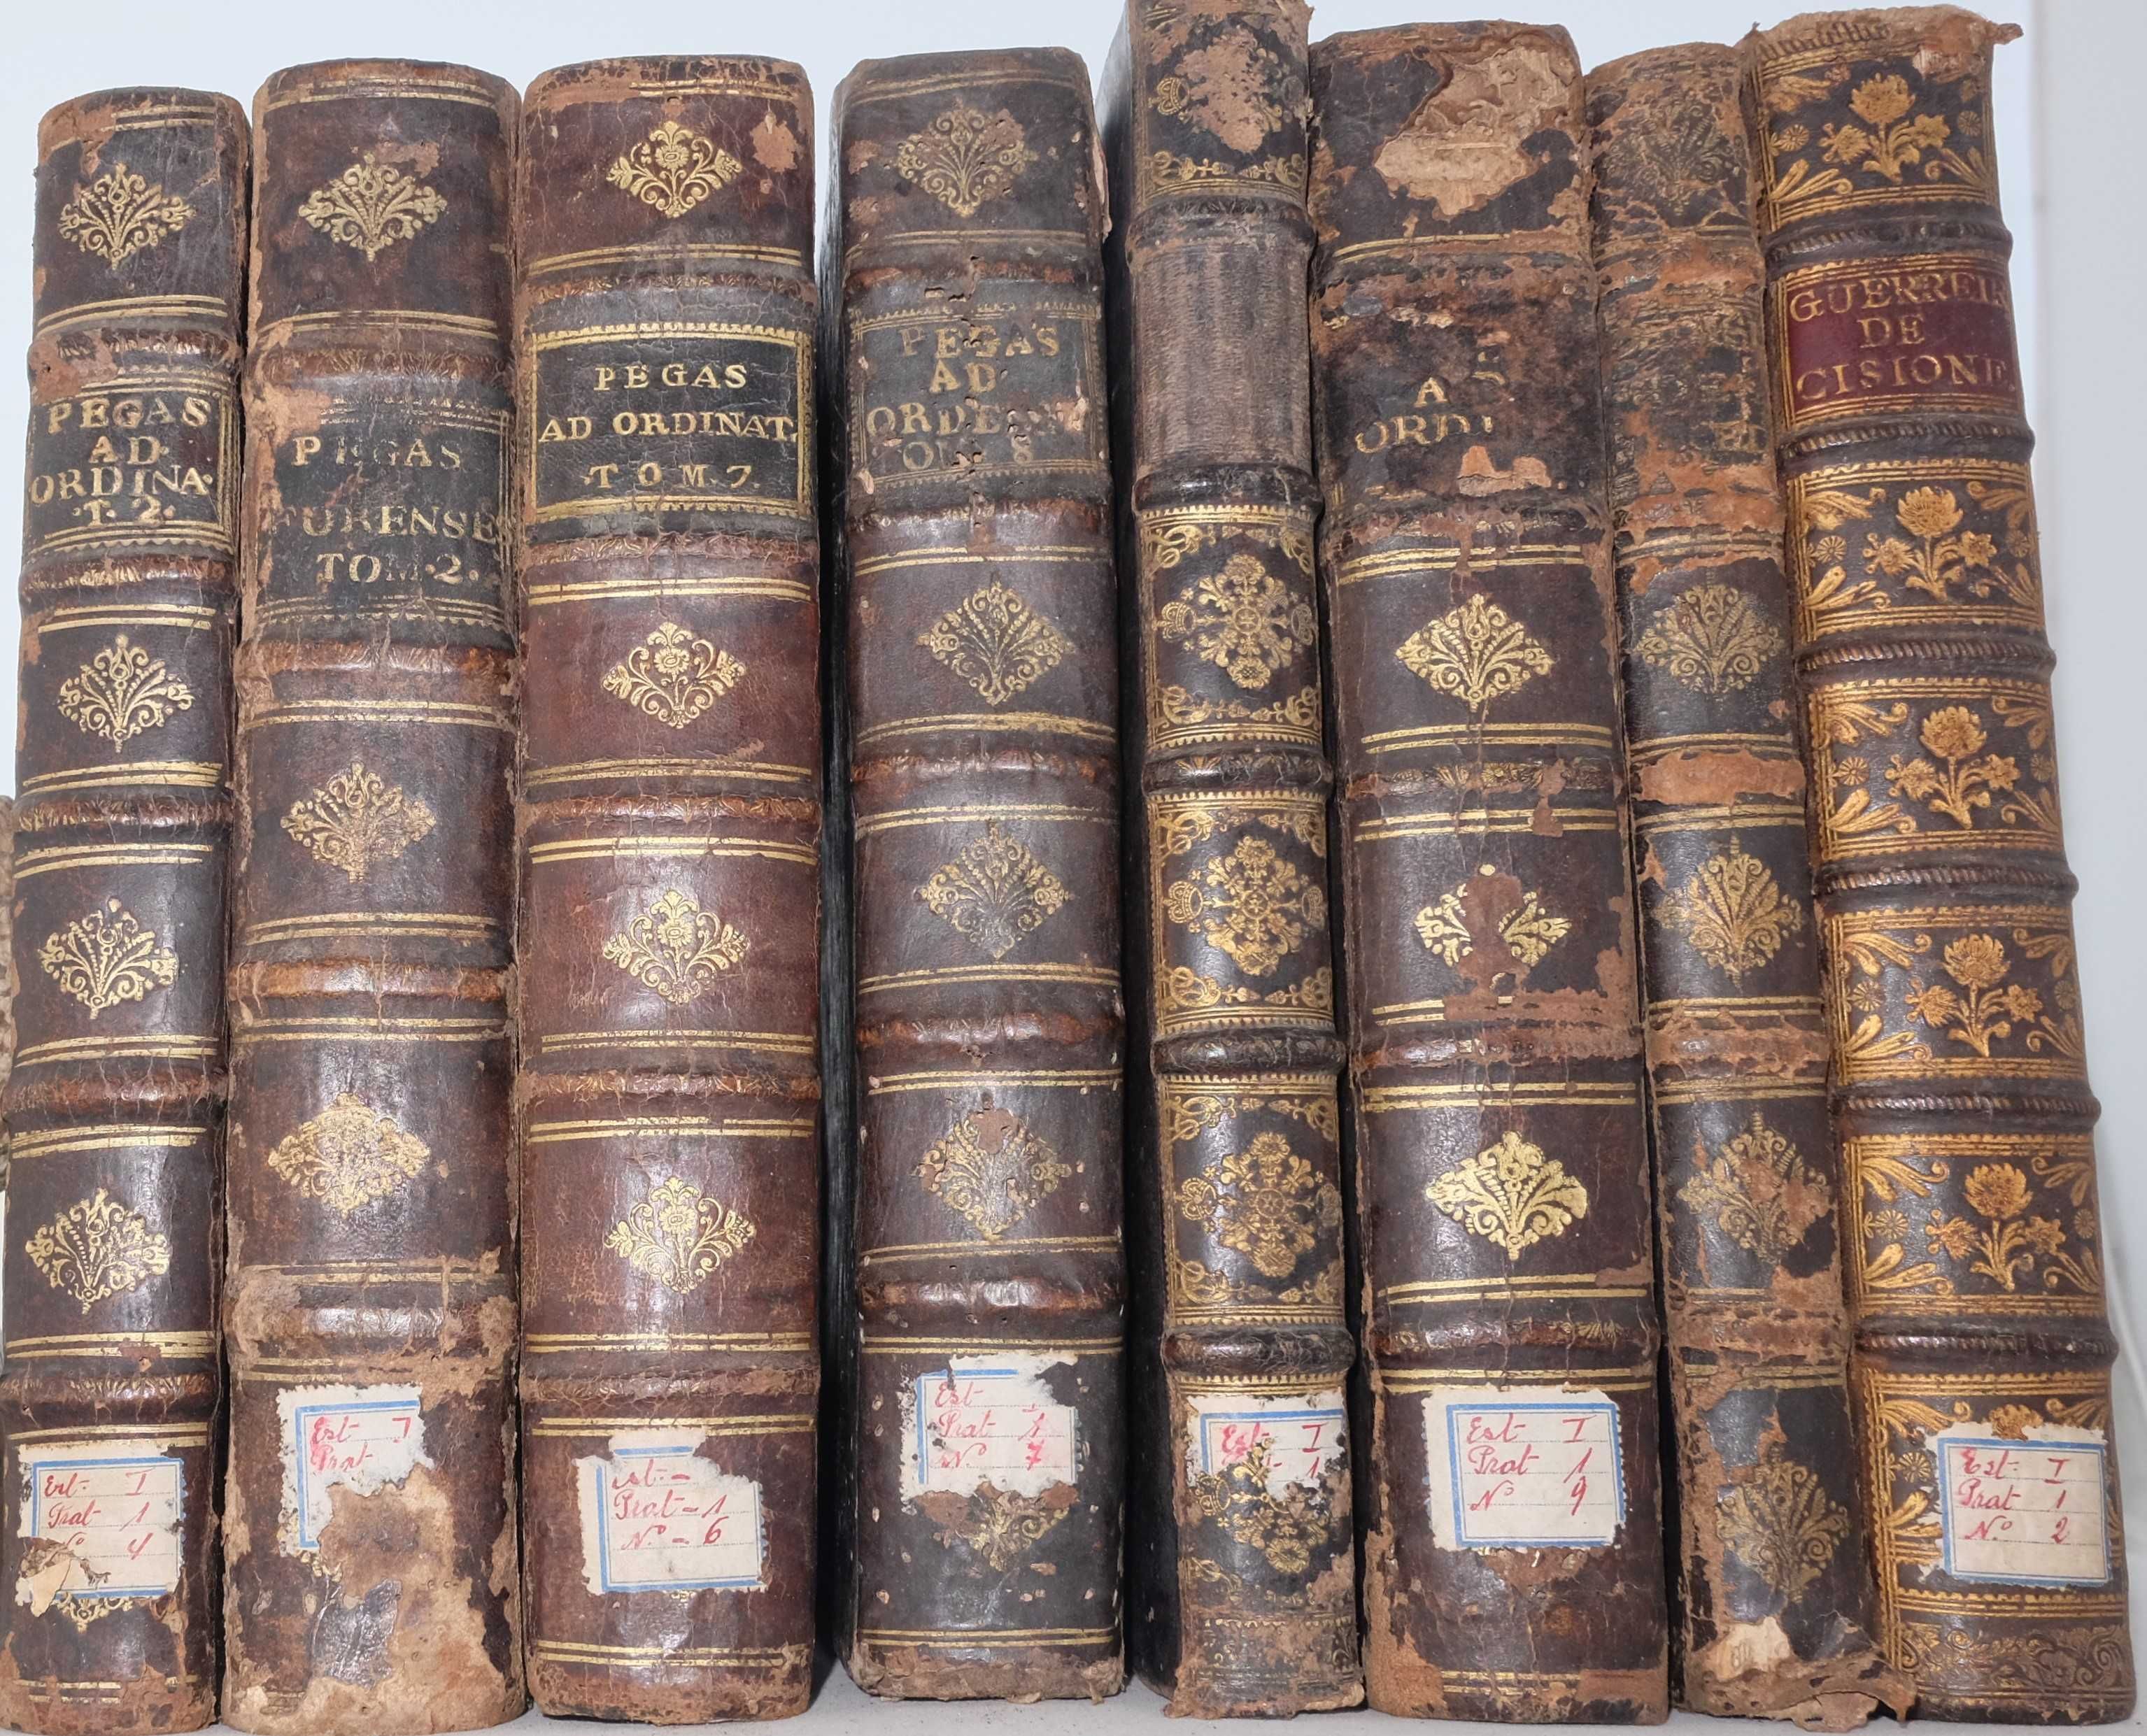 Importante conjunto de livros de direito dos séculos XVII e XVIII